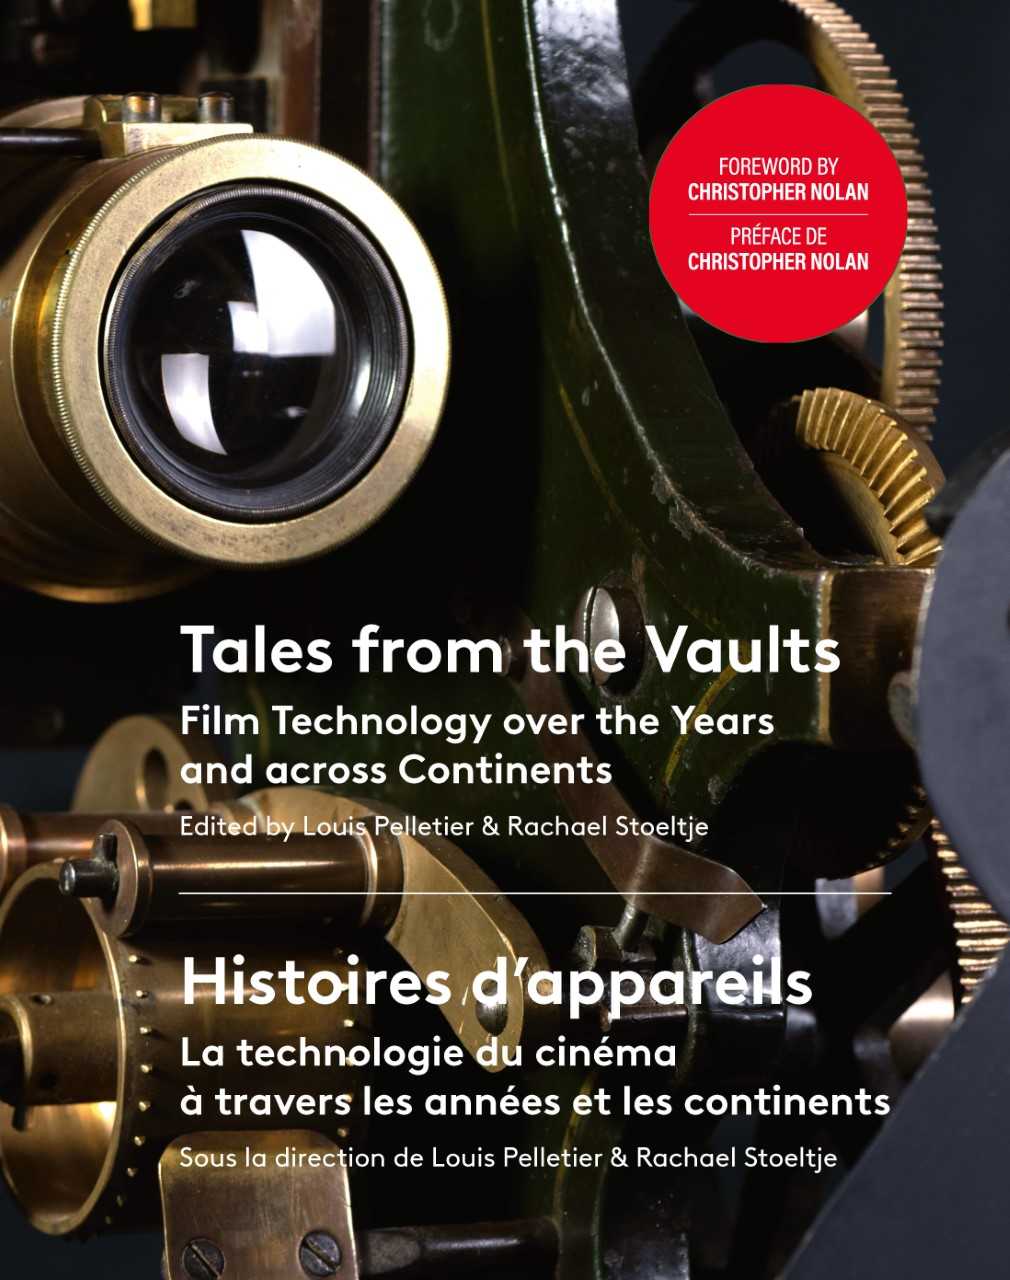 "Histoires d’appareils : la technologie du Cinéma à travers les années et les continents"